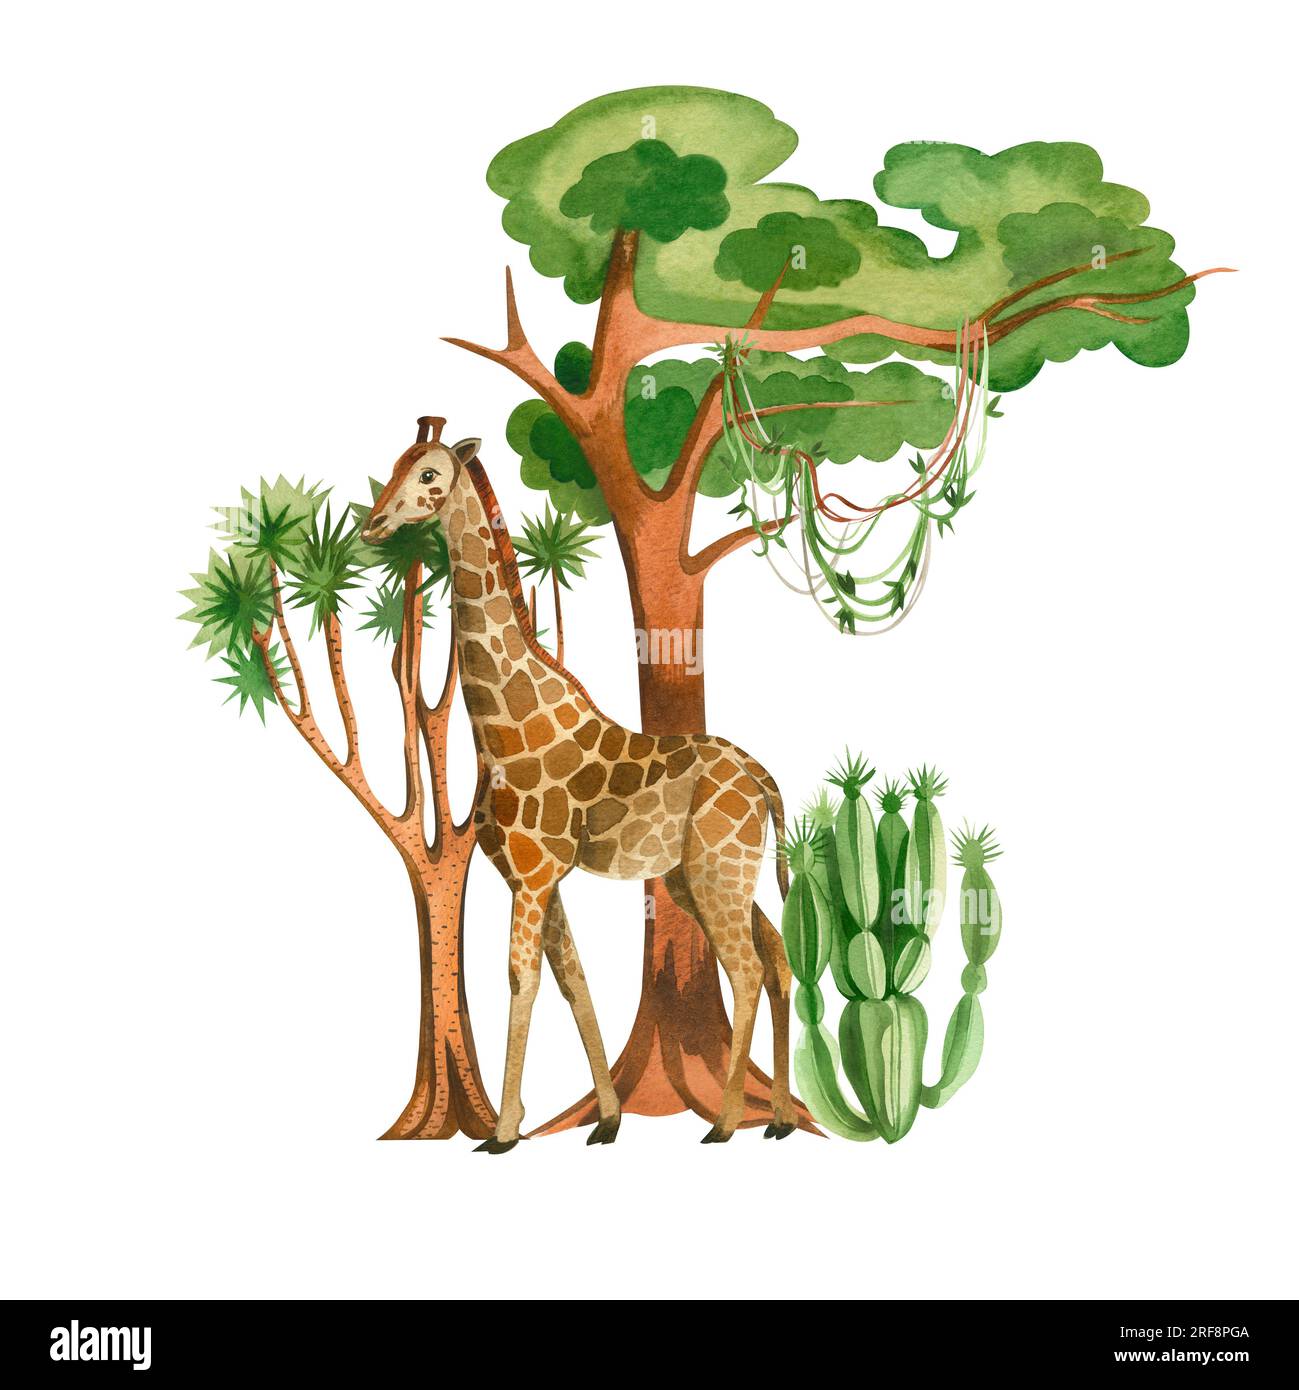 Illustration aquarelle sur fond blanc. Girafe parmi les arbres et les cactus, tous les éléments sont dessinés à la main à l'aquarelle. Convient pour l'impression sur fabr Banque D'Images